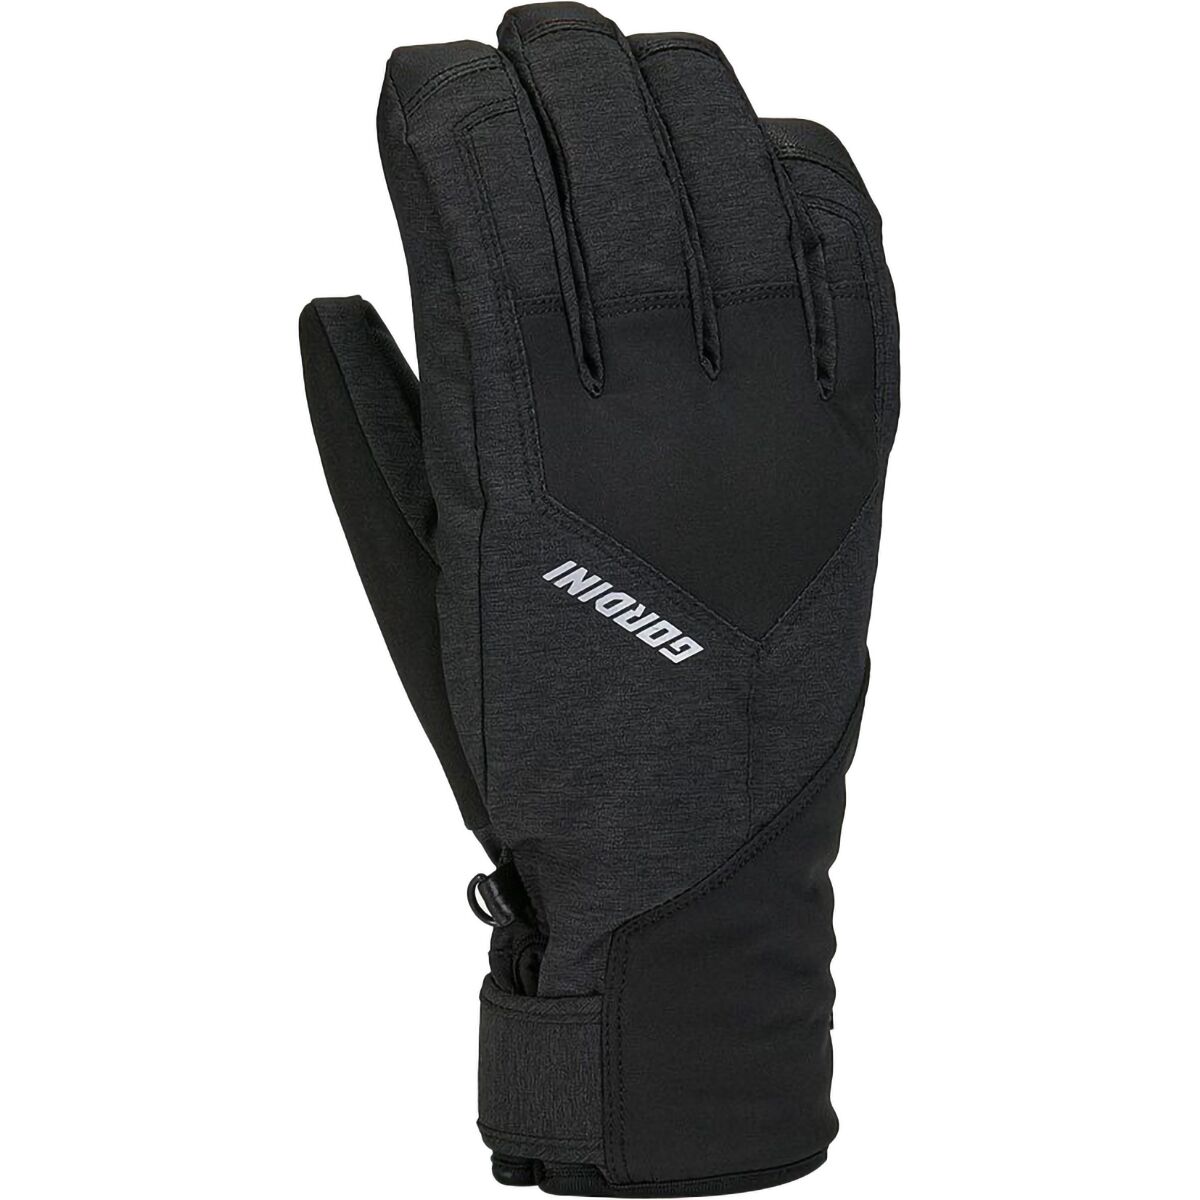 Gordini AquaBloc Glove - Men's Black